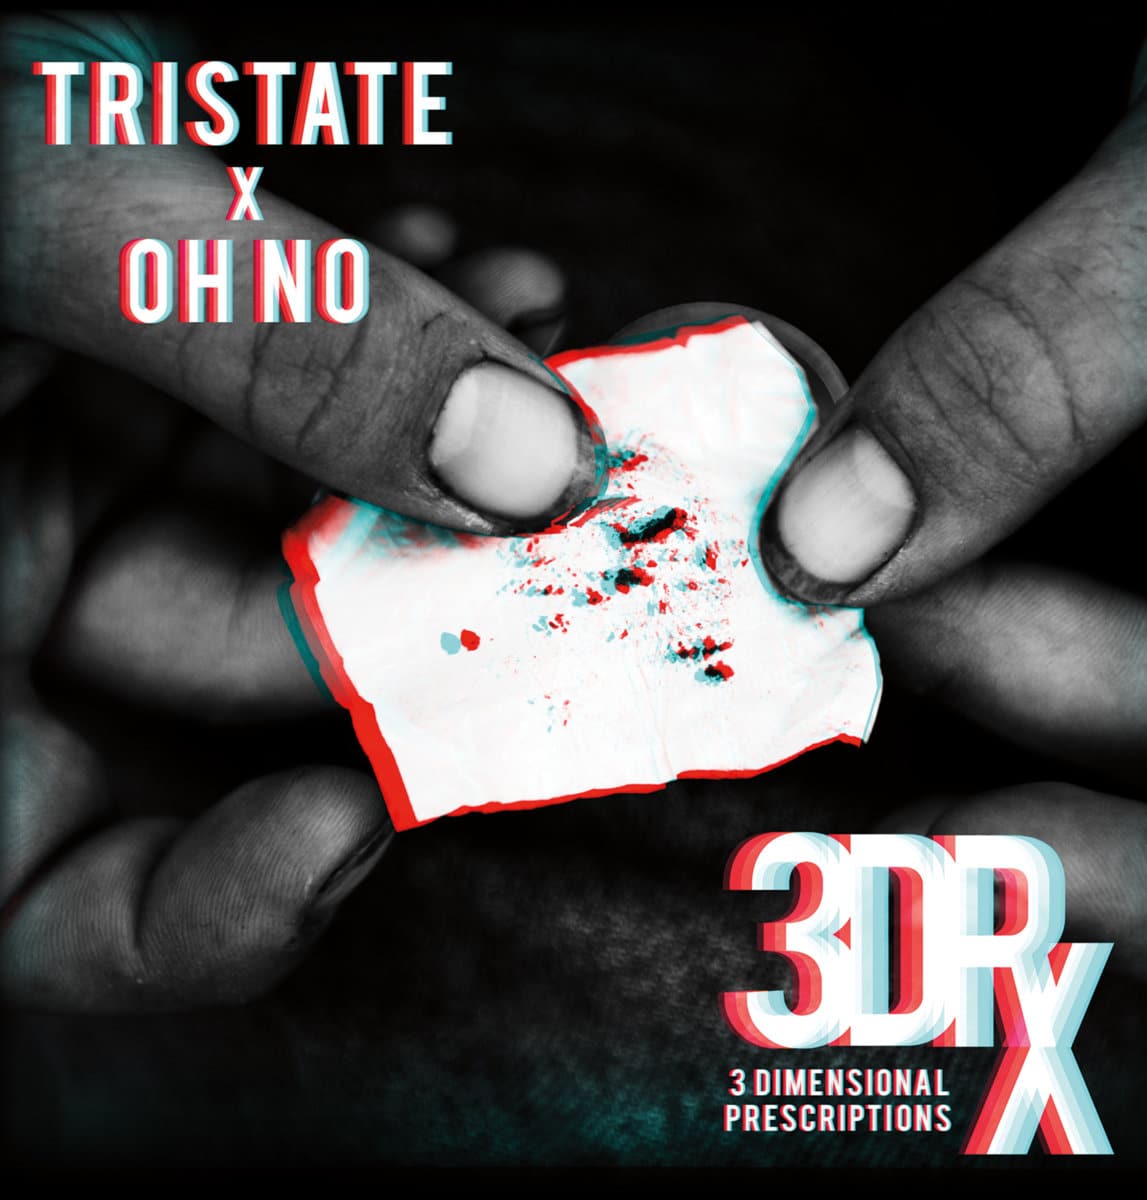 Tristate & Oh No - "3 Dimensional Prescriptions" (Release)